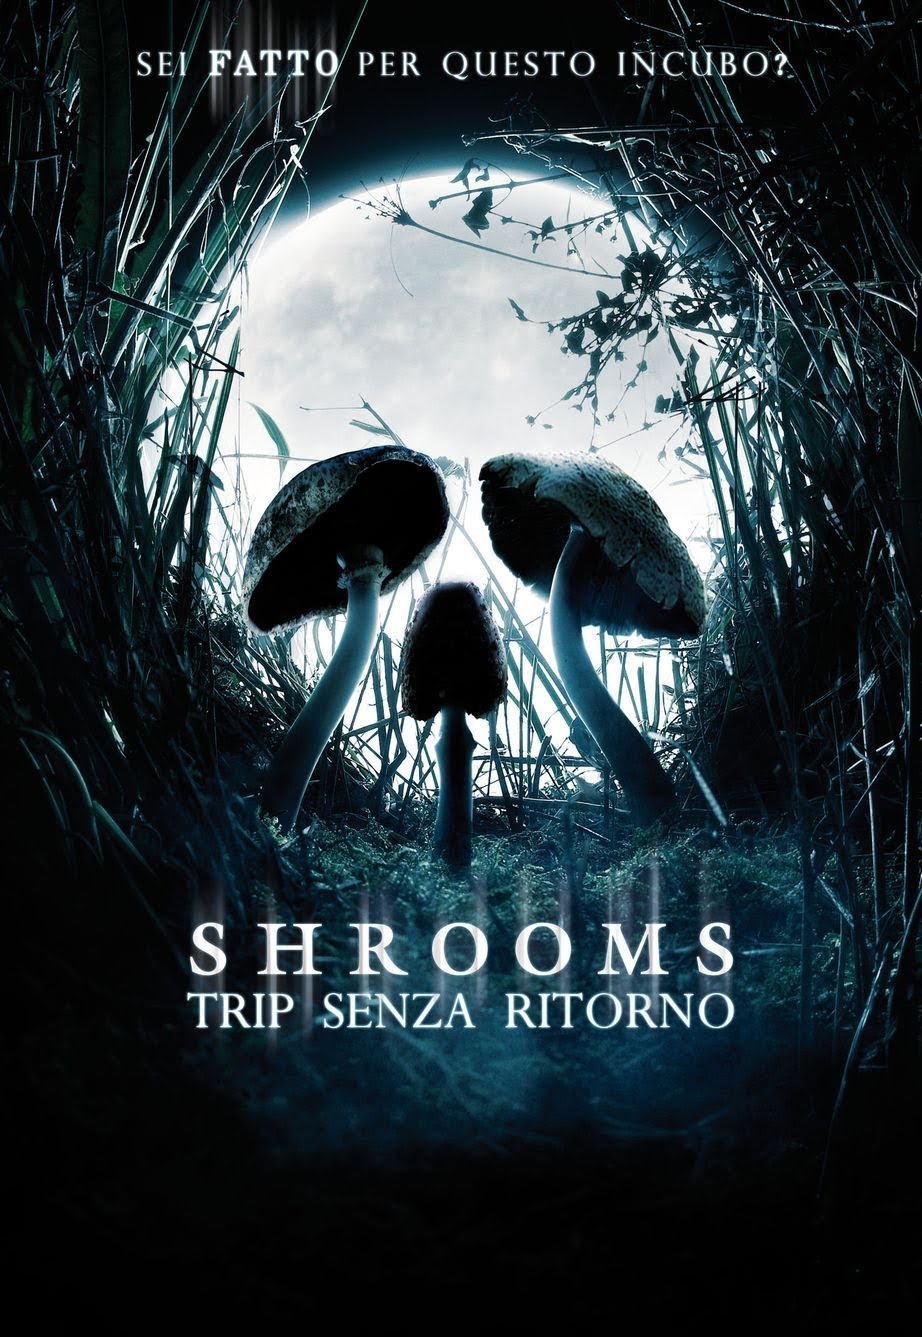 Shrooms – Trip senza ritorno [HD] (2006)